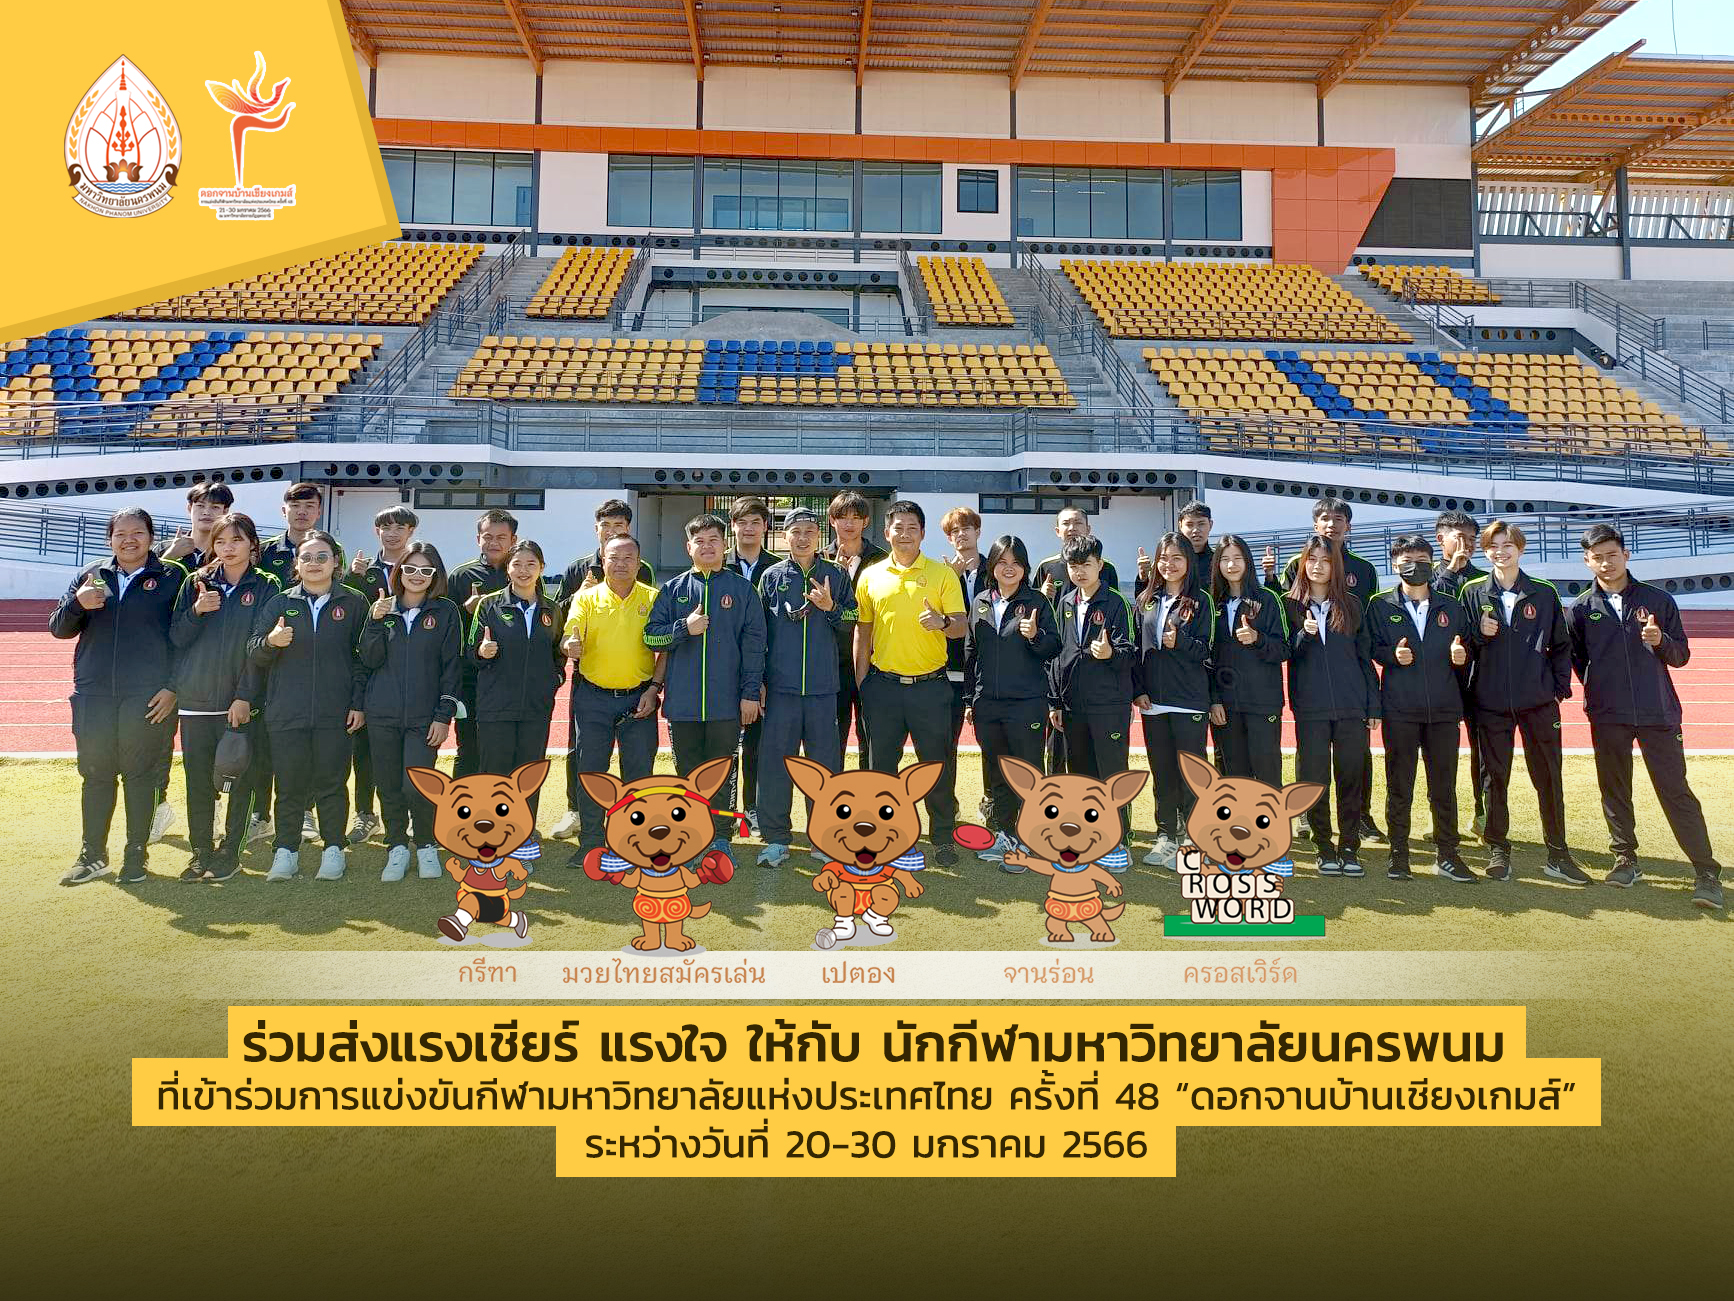 นักกีฬา ม.นครพนม เข้าร่วมแข่งขันกีฬามหาวิทยาลัยแห่งประเทศไทย ครั้งที่ 48